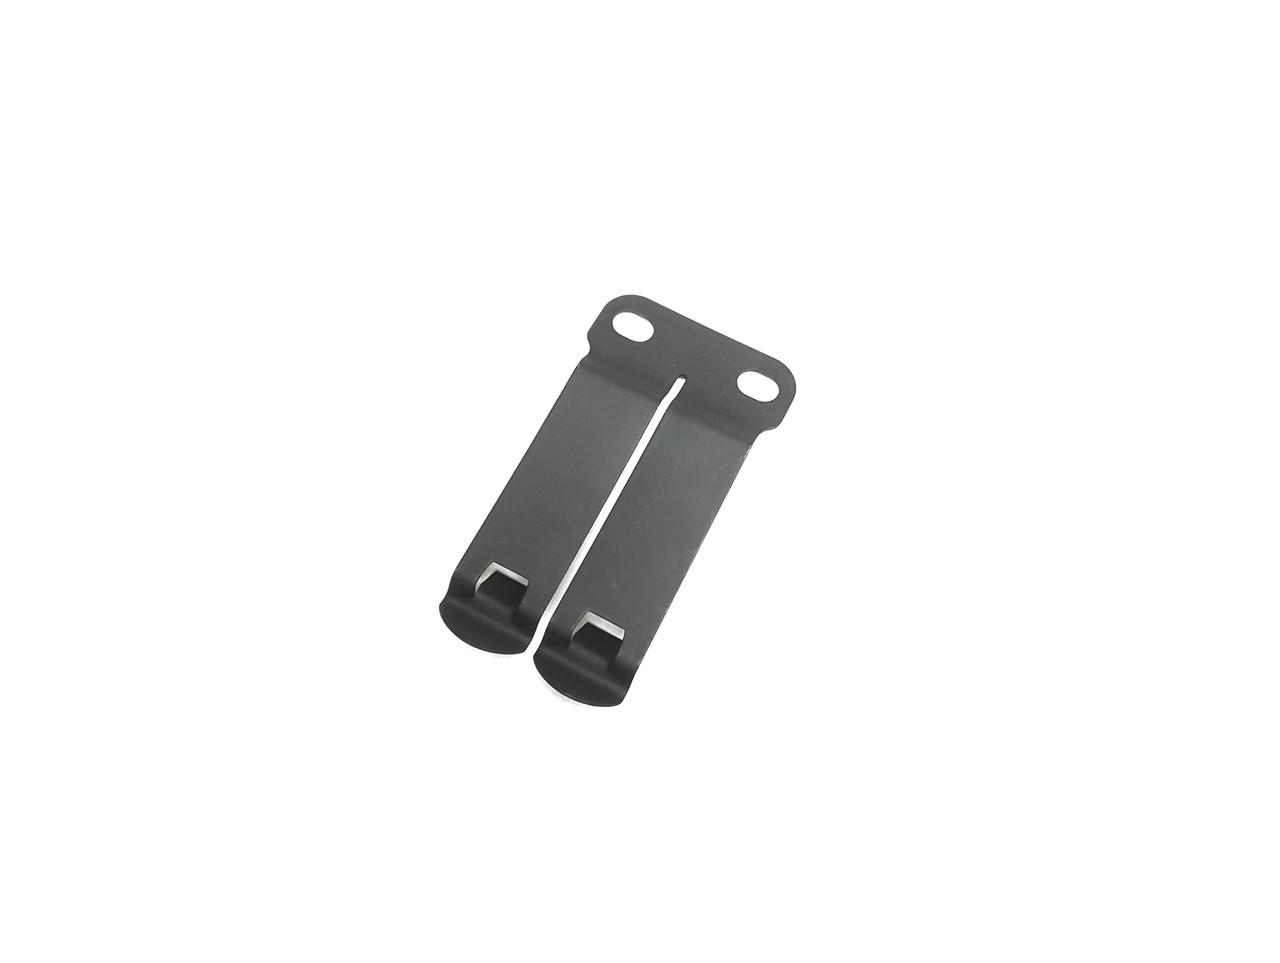 Spring steel metal holster belt clip.